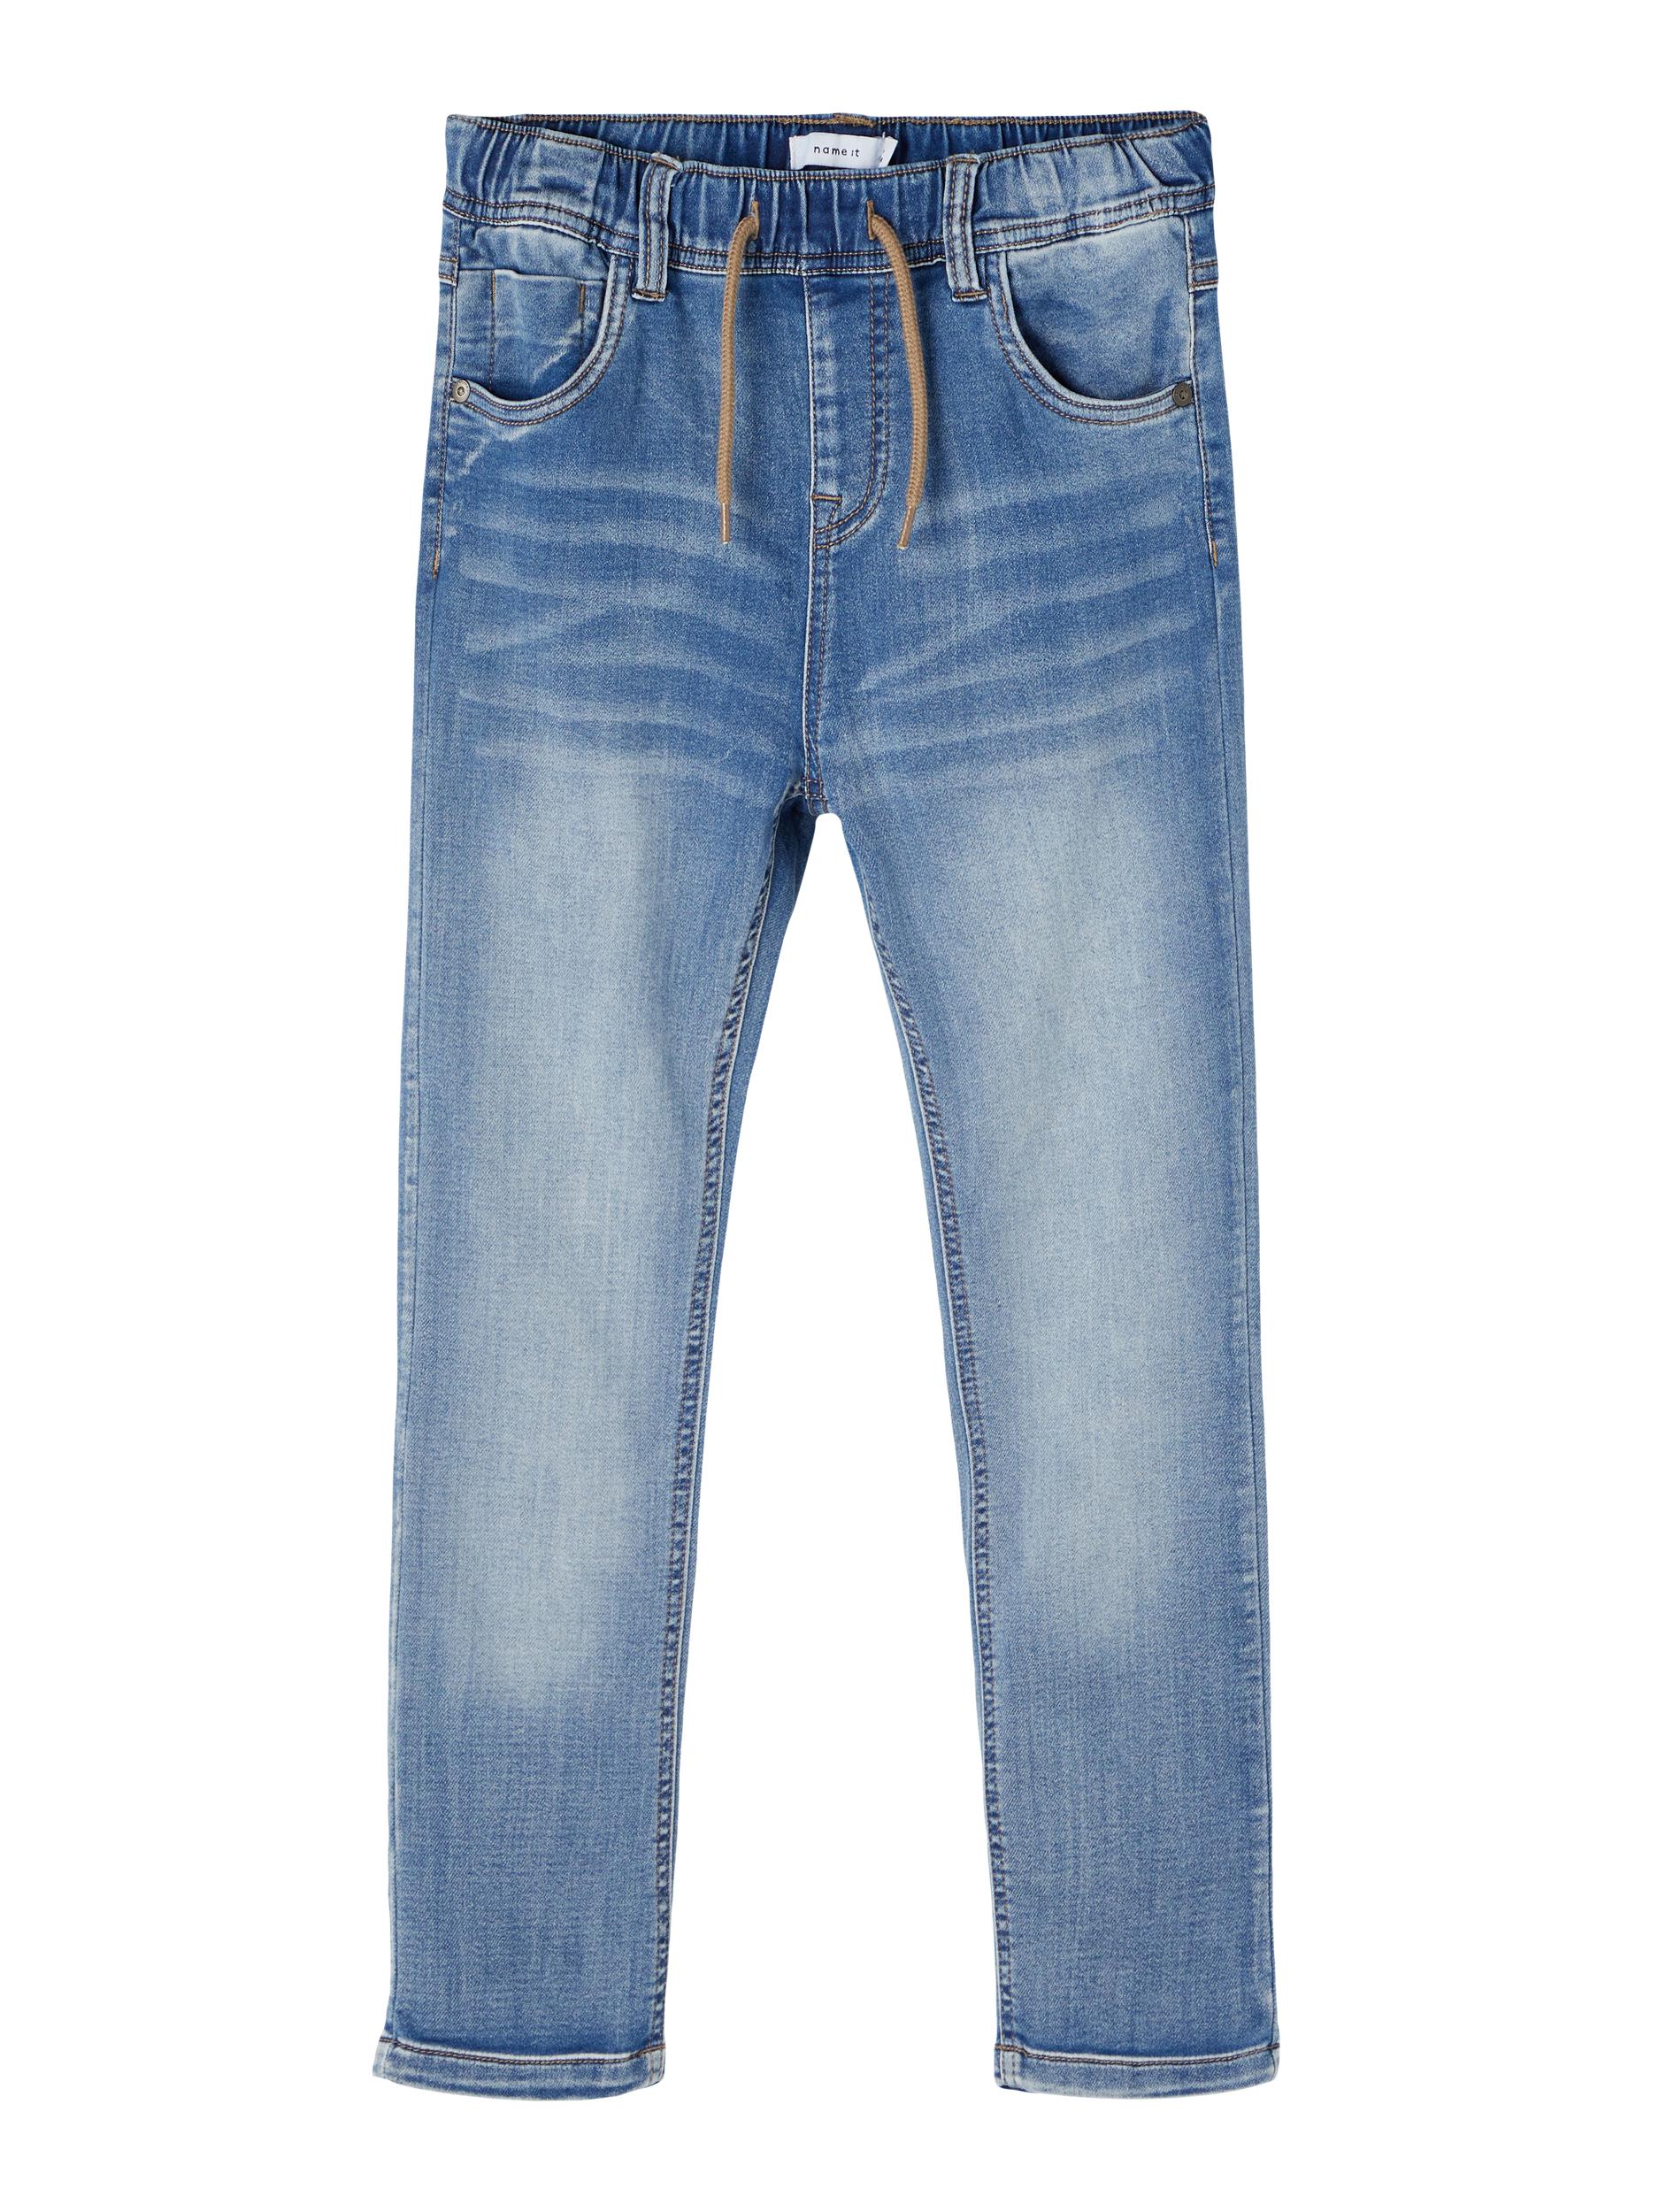 Robin Jeans, Light Blue Denim, 116 cm